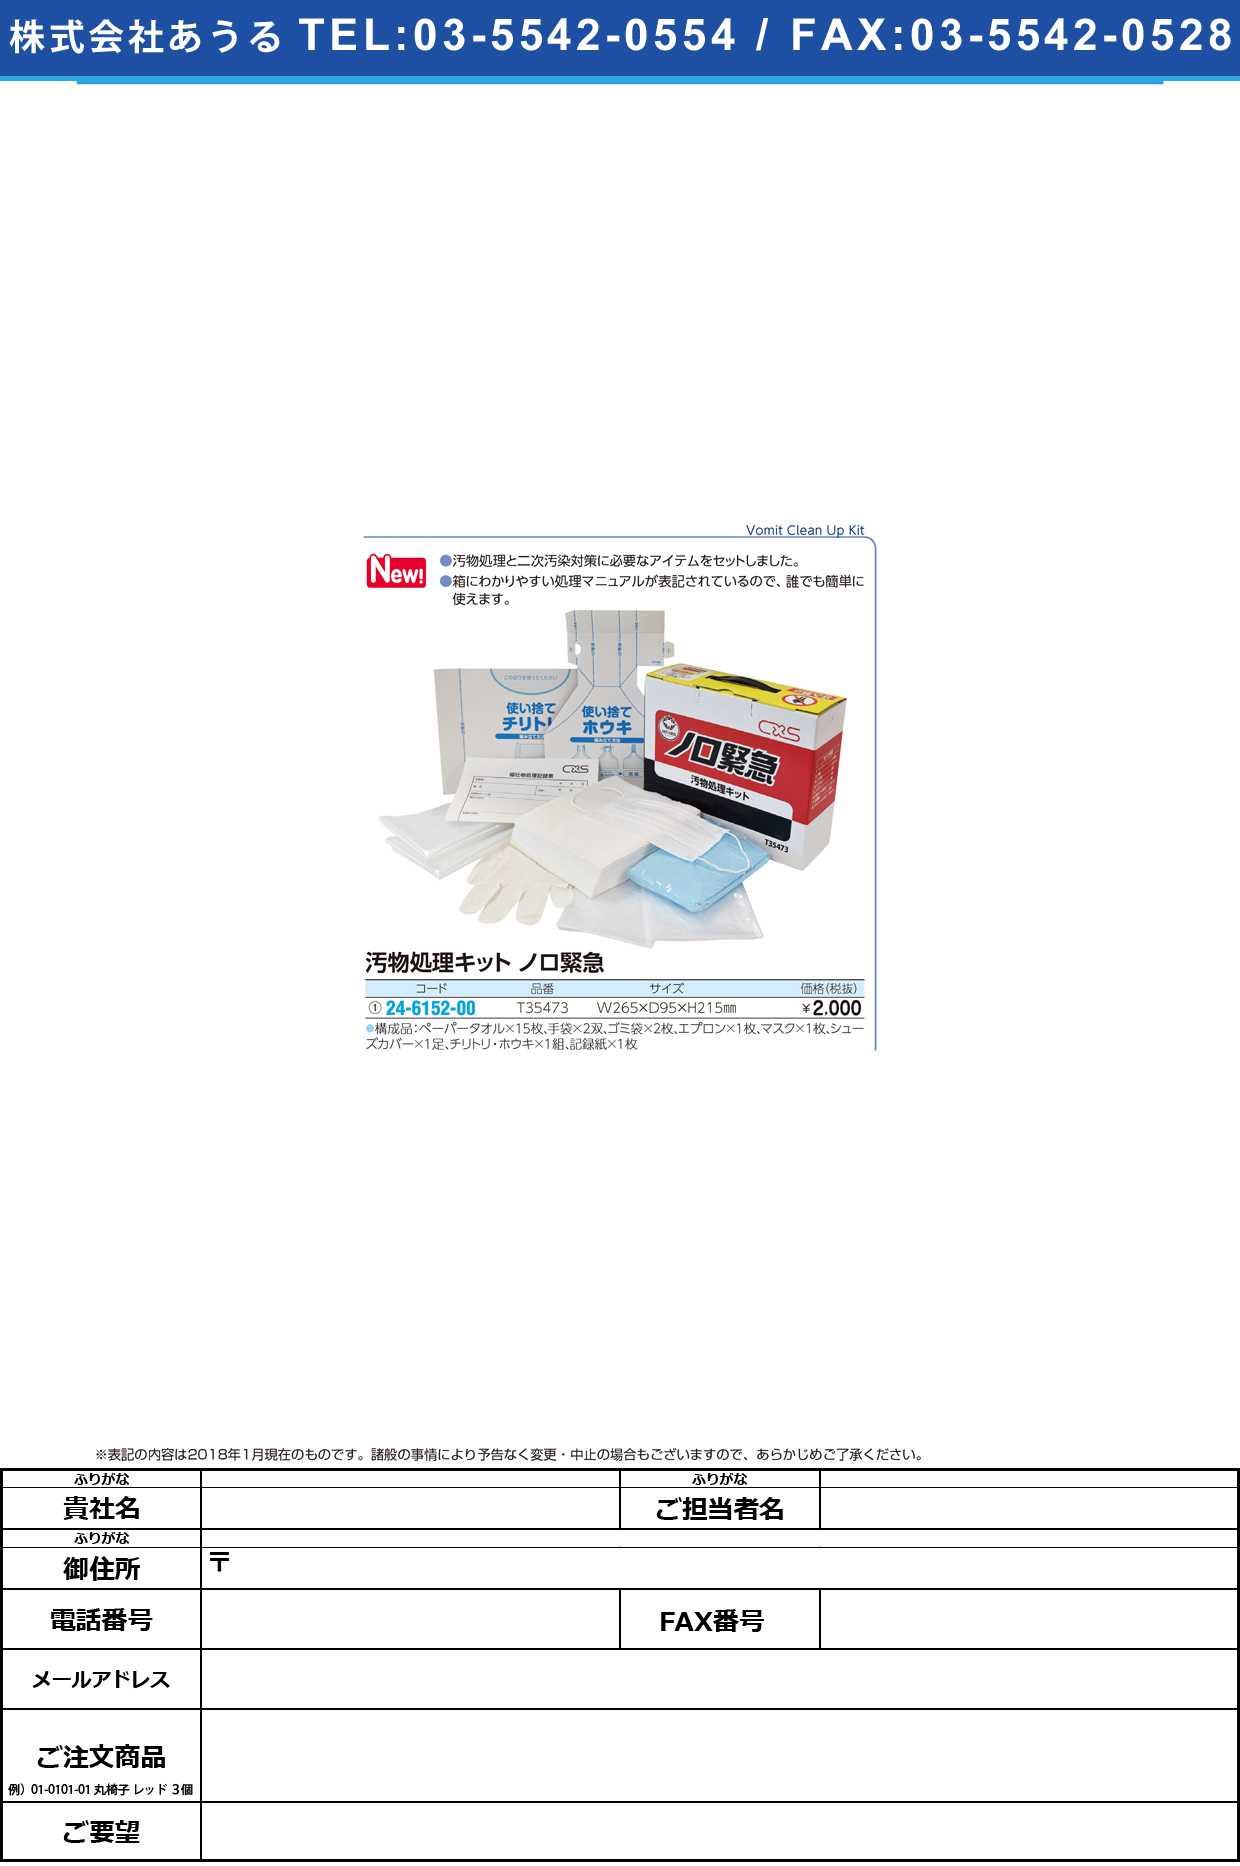 (24-6152-00)汚物処理キットノロ緊急 T35473 ｵﾌﾞﾂｼｮﾘｷｯﾄ【1組単位】【2018年カタログ商品】